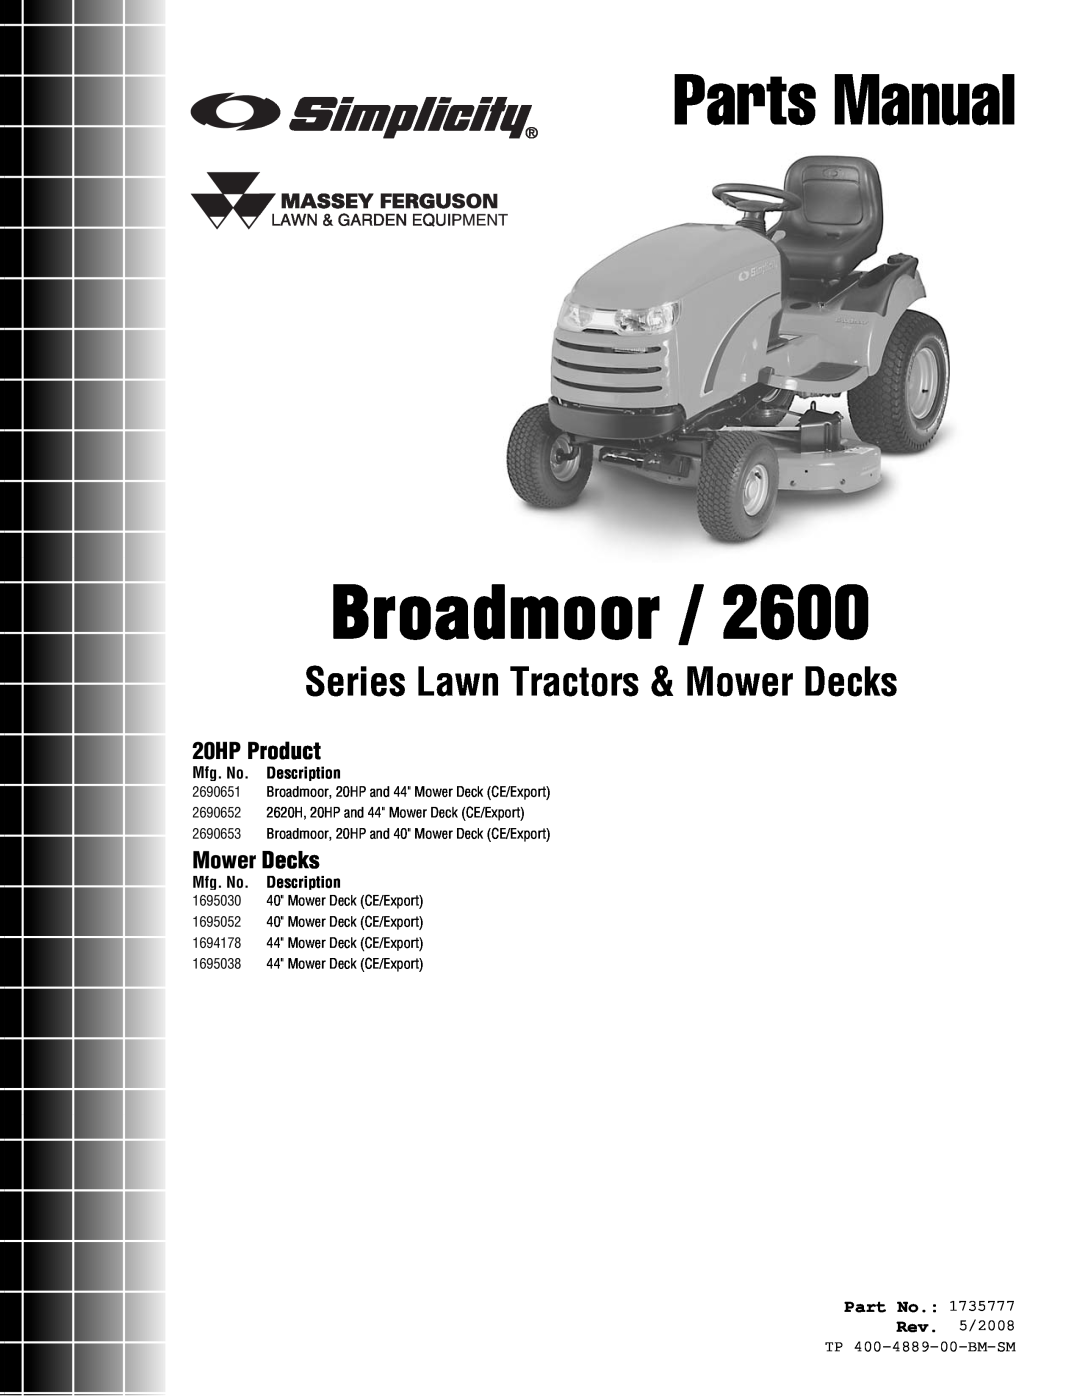 Simplicity 2600 Series manual 20HP Product, Mower Decks, Part No, Mfg. No. Description, Rev. 5/2008 TP 400-4889-00-BM-SM 